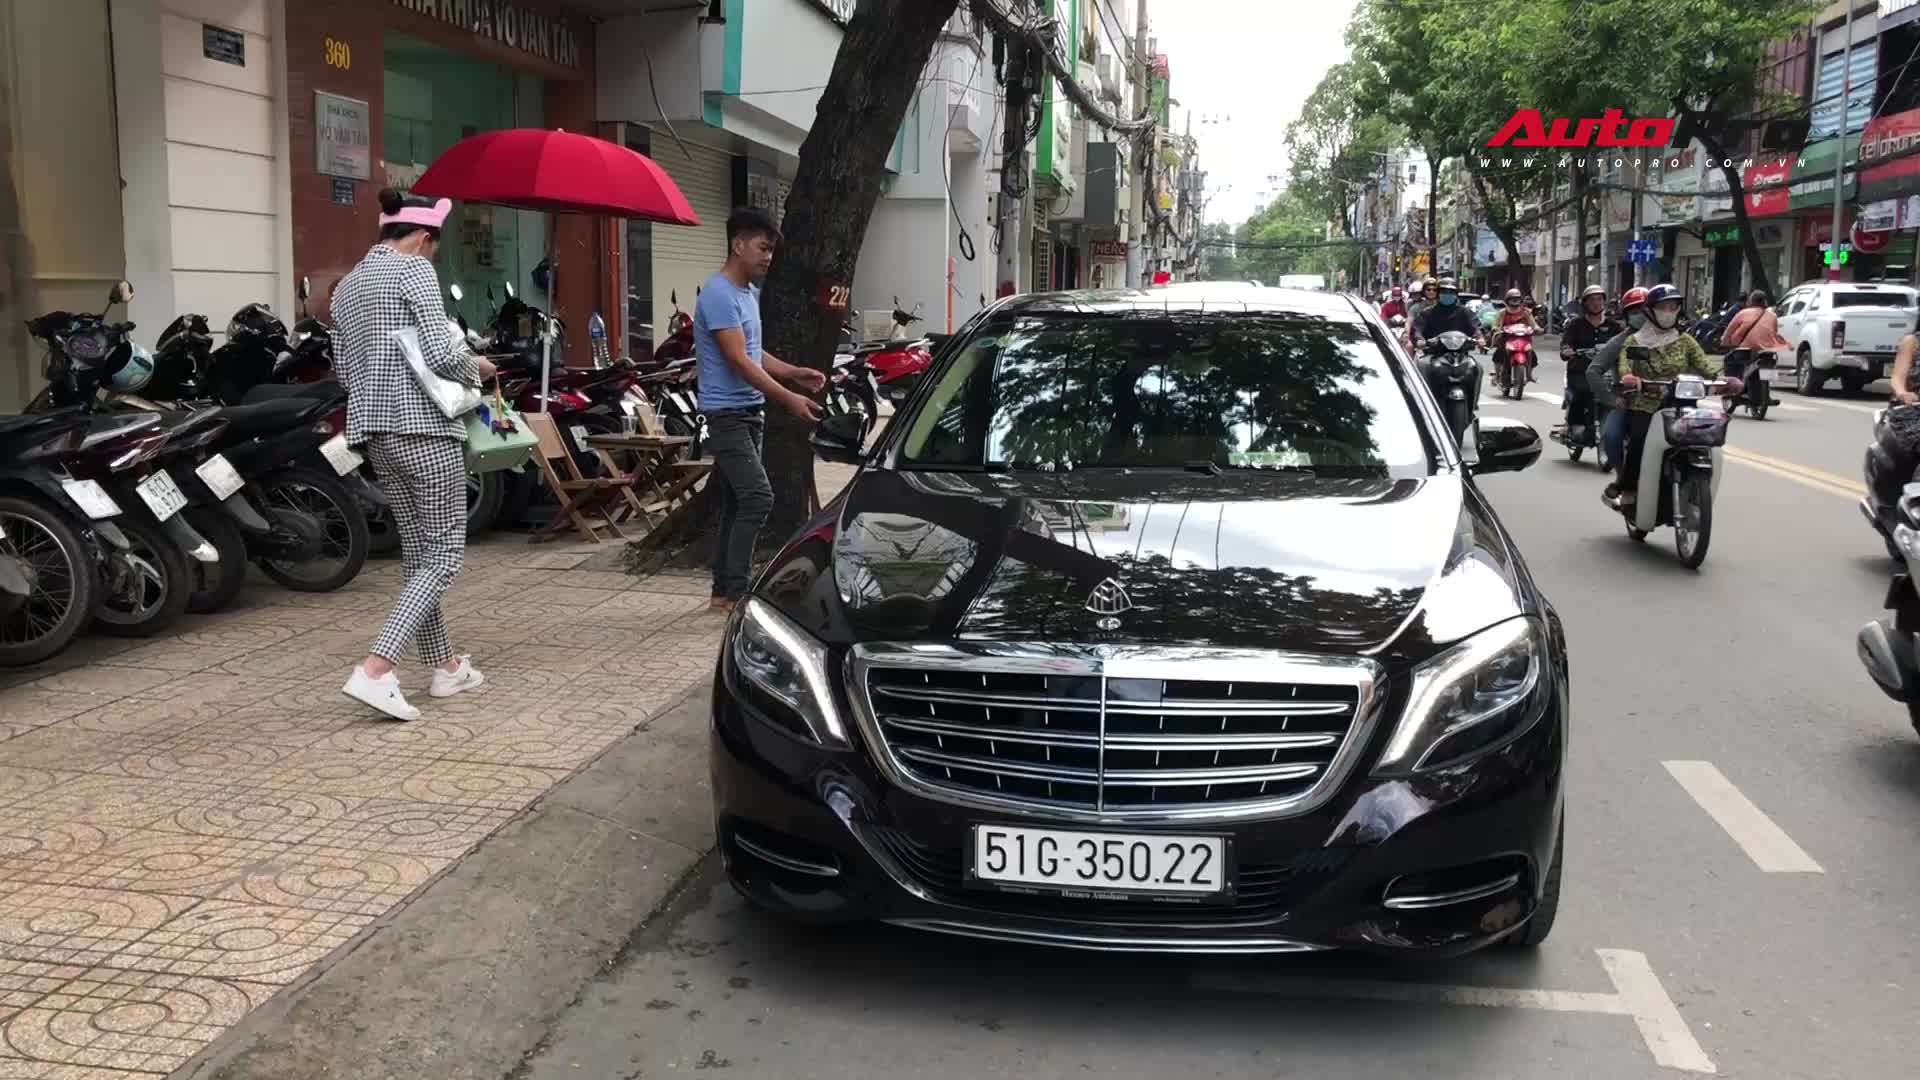 Ngọc Trinh xuất hiện cùng Mercedes S500 Maybach 11 tỷ đồng dịp cuối tuần